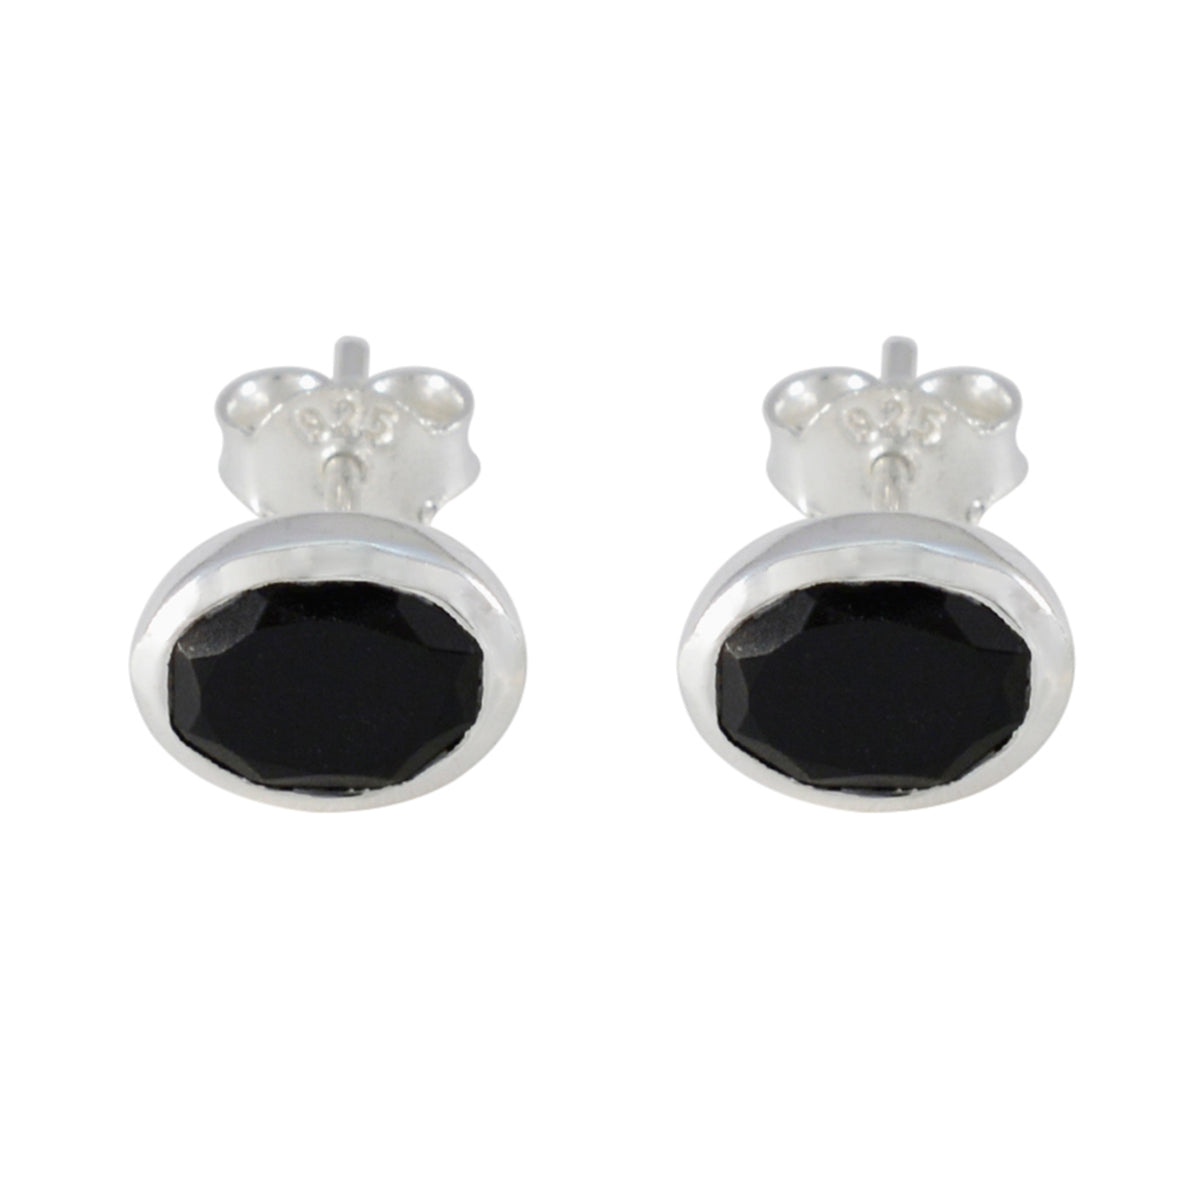 Riyo betörender 925er-Sterlingsilber-Ohrring für Mädchen, schwarzer Onyx-Ohrring, Lünettenfassung, schwarzer Ohrring-Ohrstecker